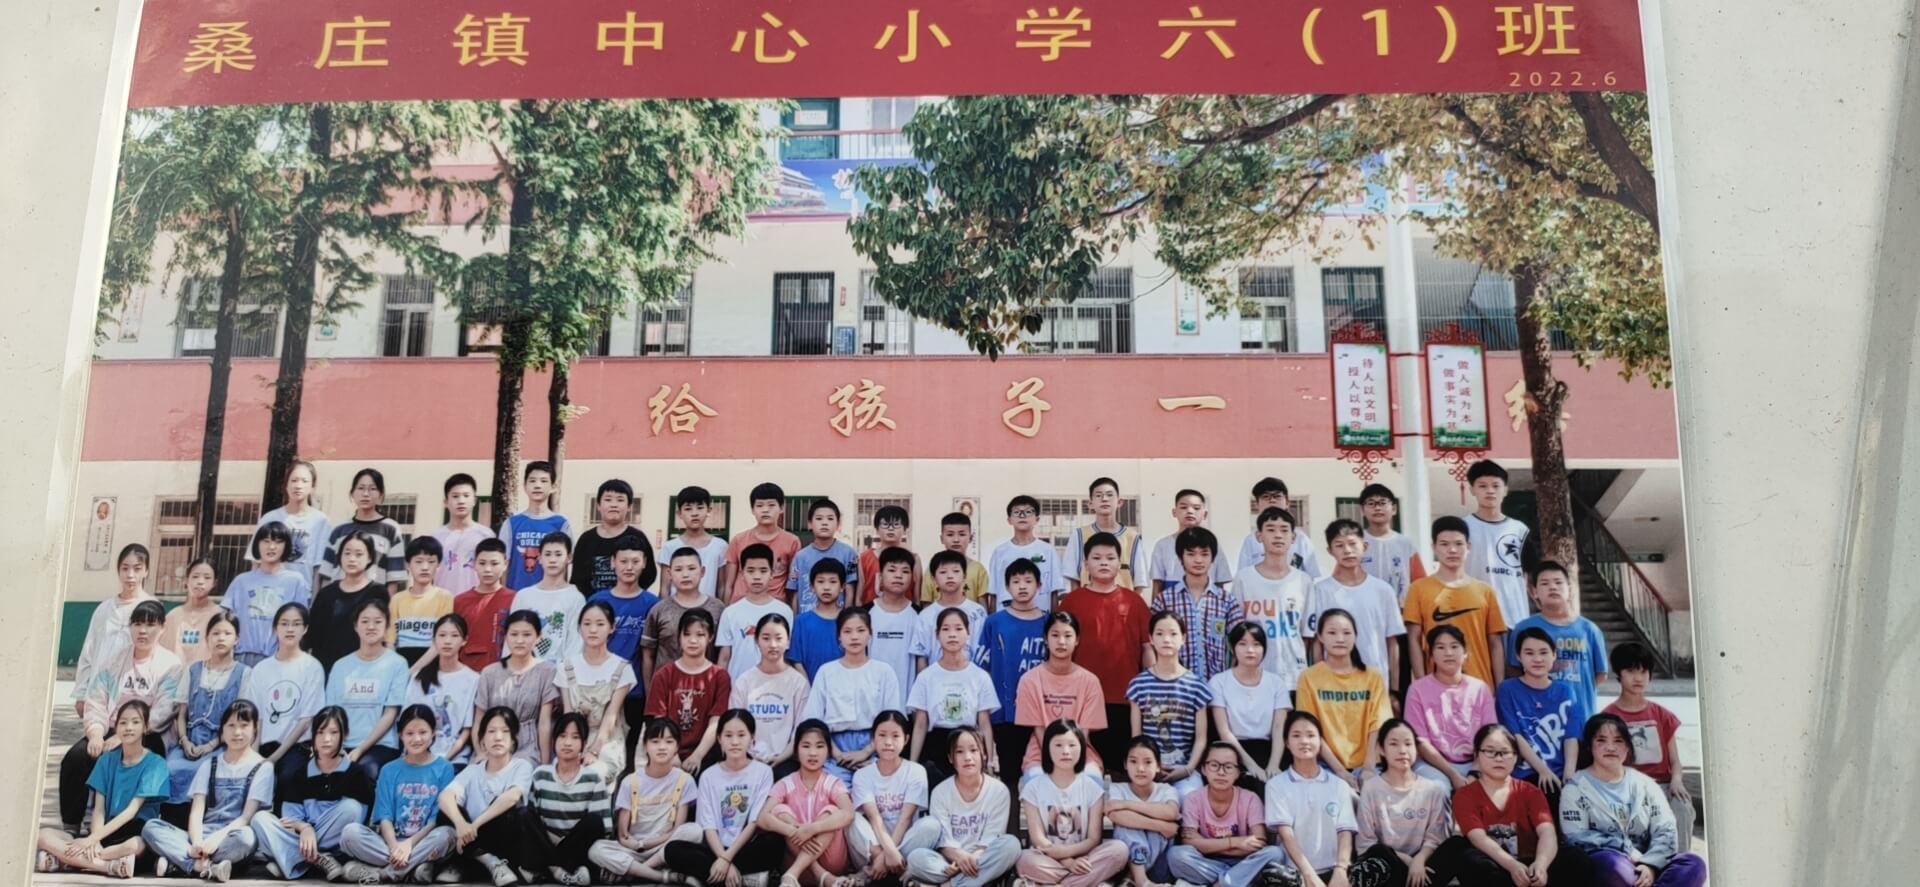 桑庄中心小学2022届六一班毕业照